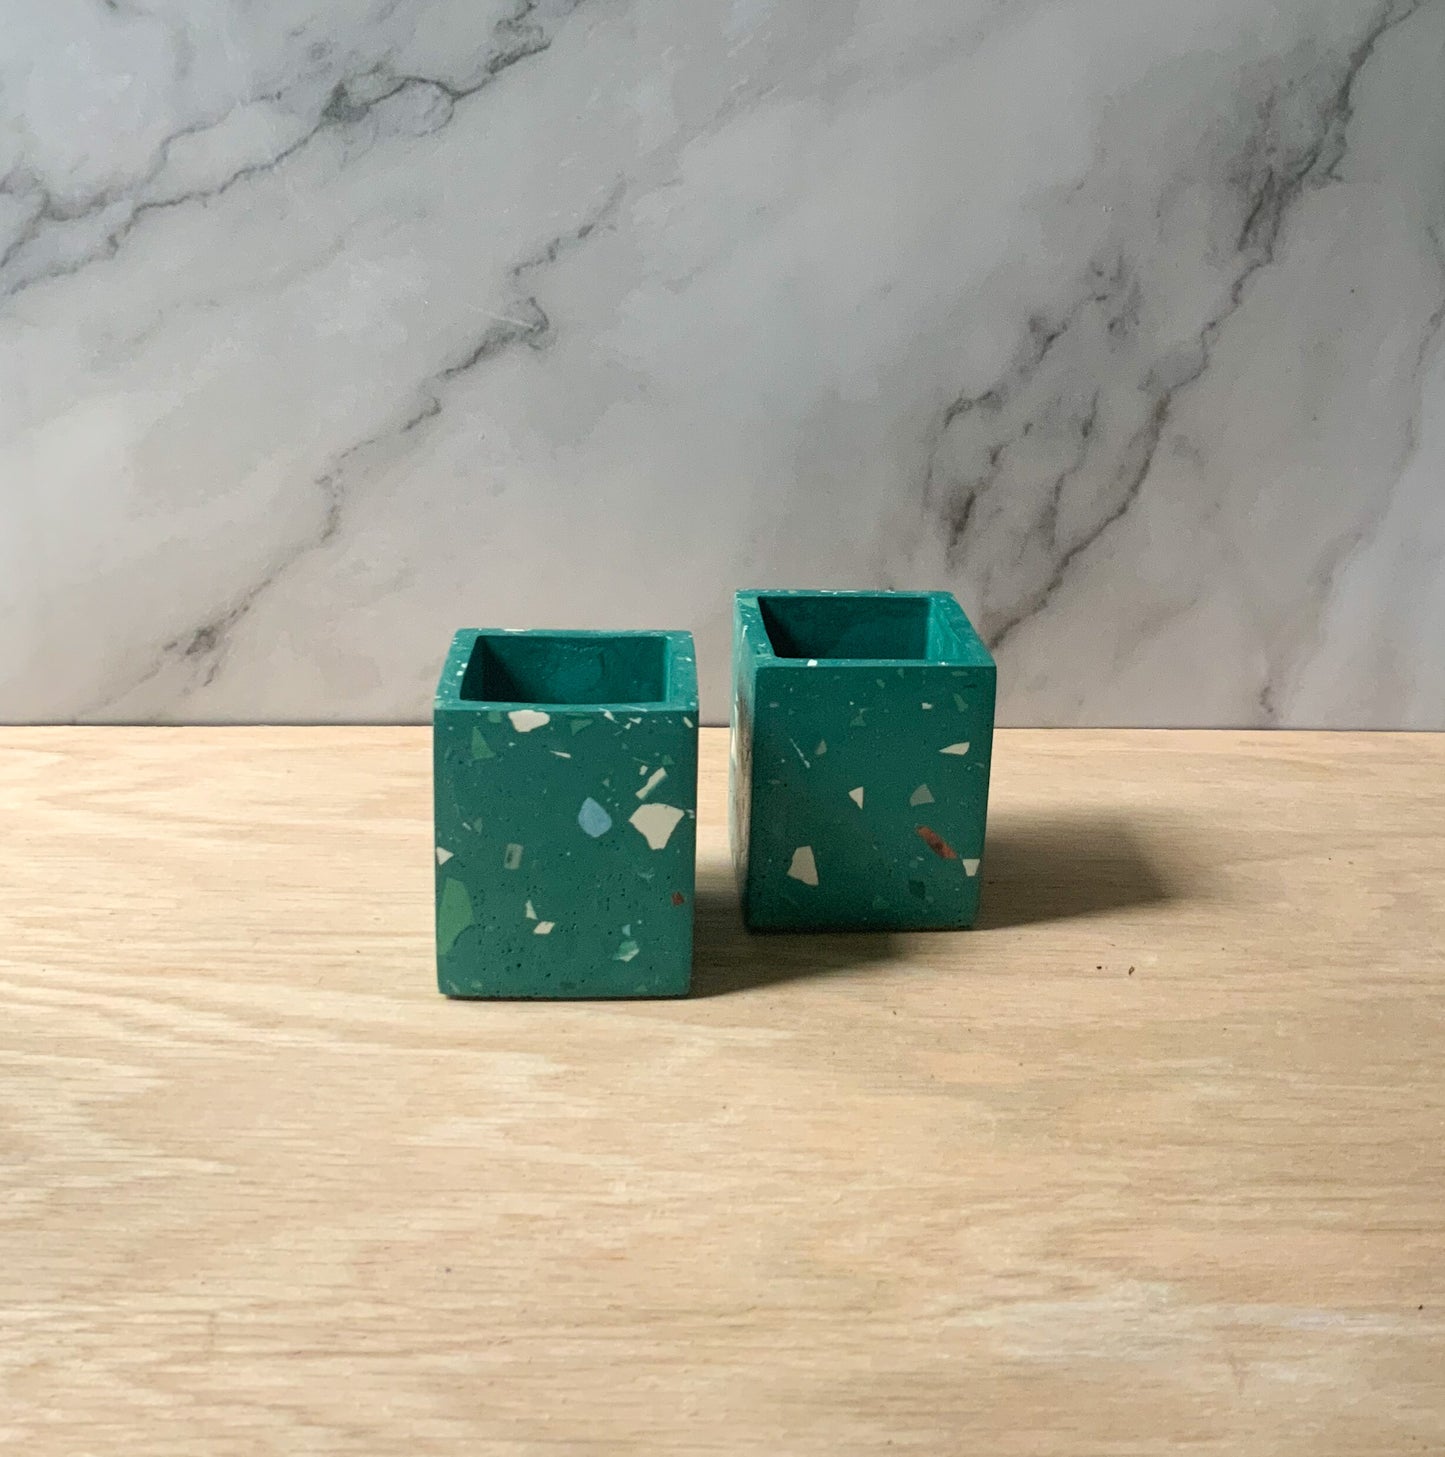 Terrazzo Square Organization Cup | Concrete storage pot | Bathroom accessories | Modern cement home decor